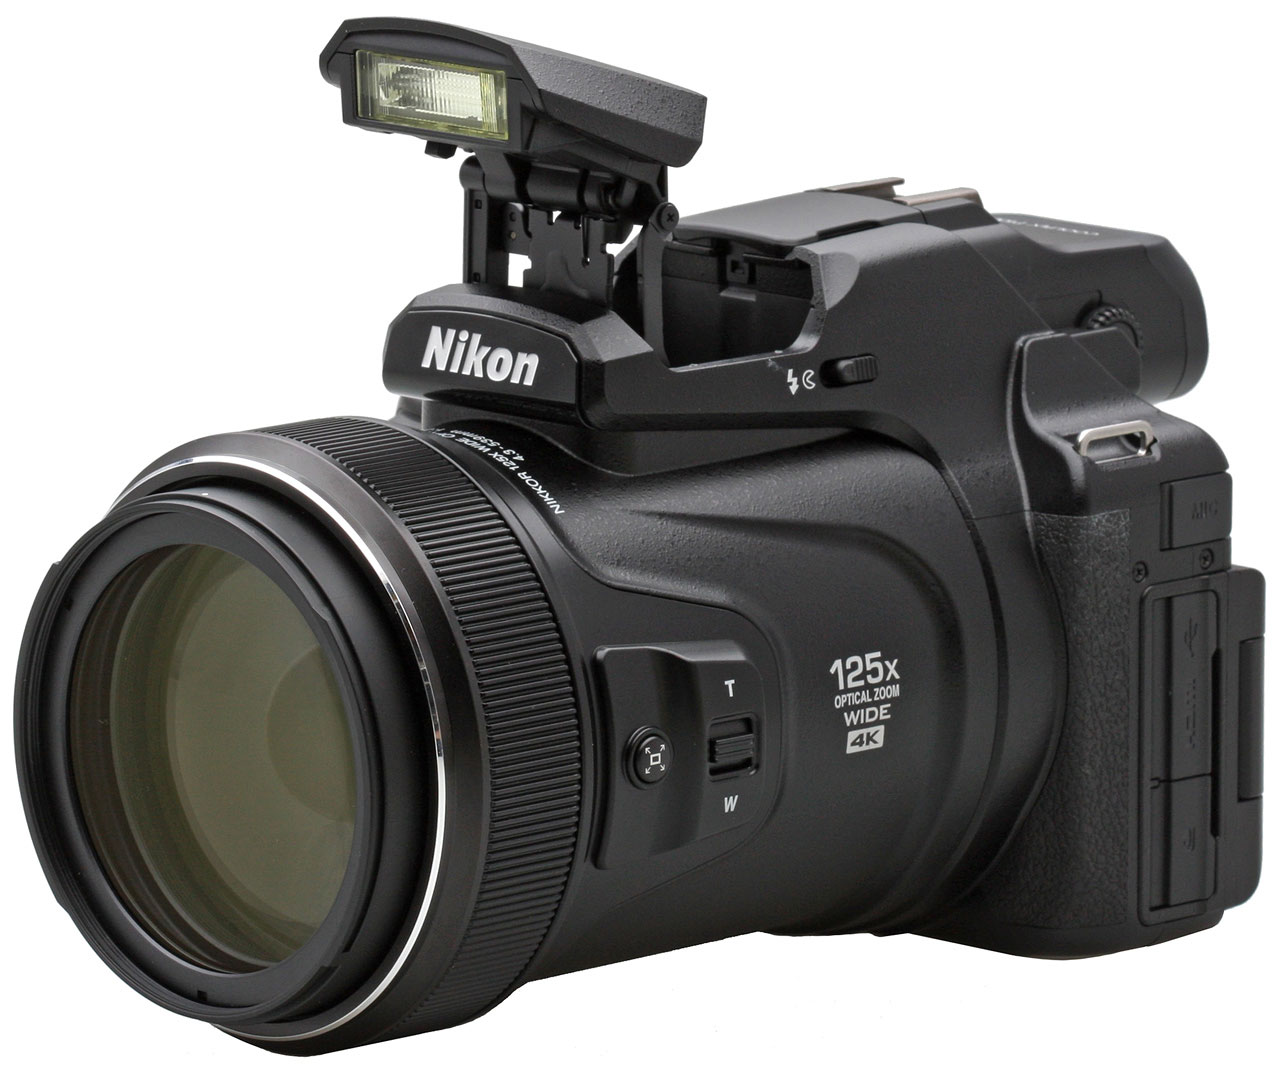 Nikon P1000 Review